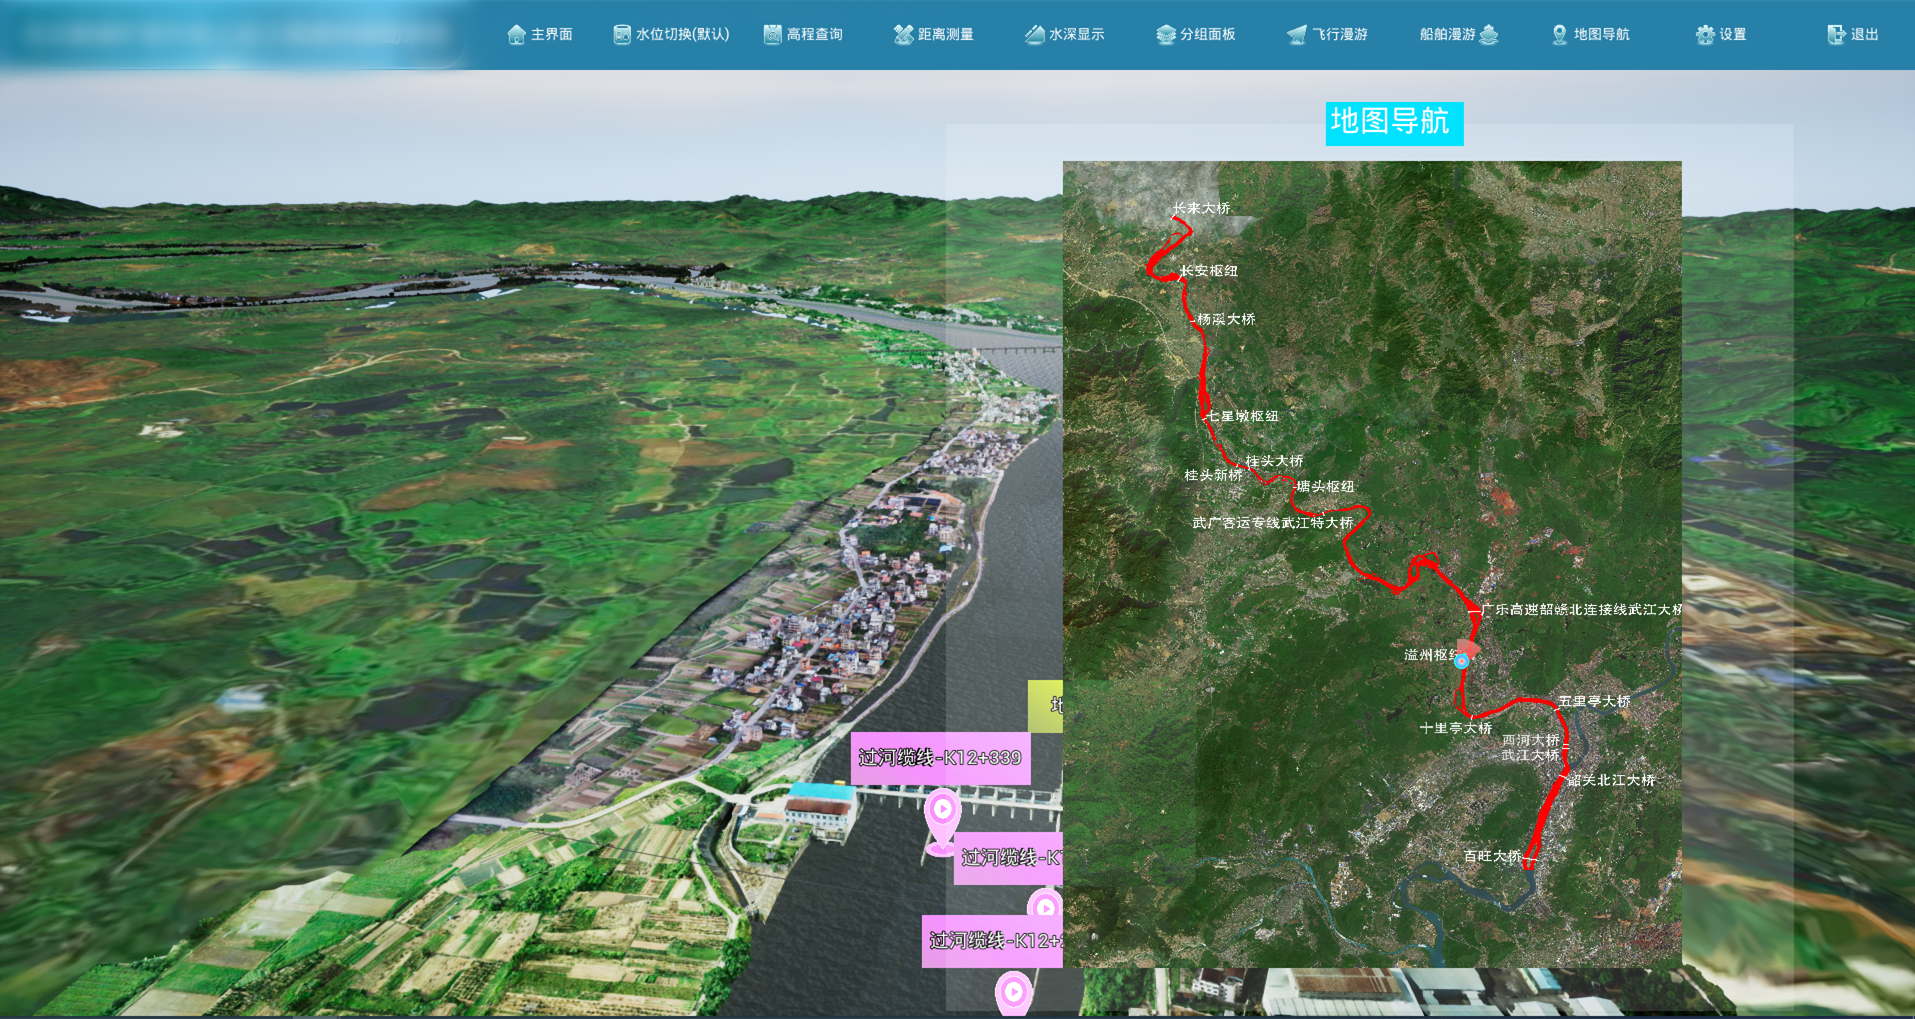 北疆航道-航道工程虚拟踏勘系统-地图导航